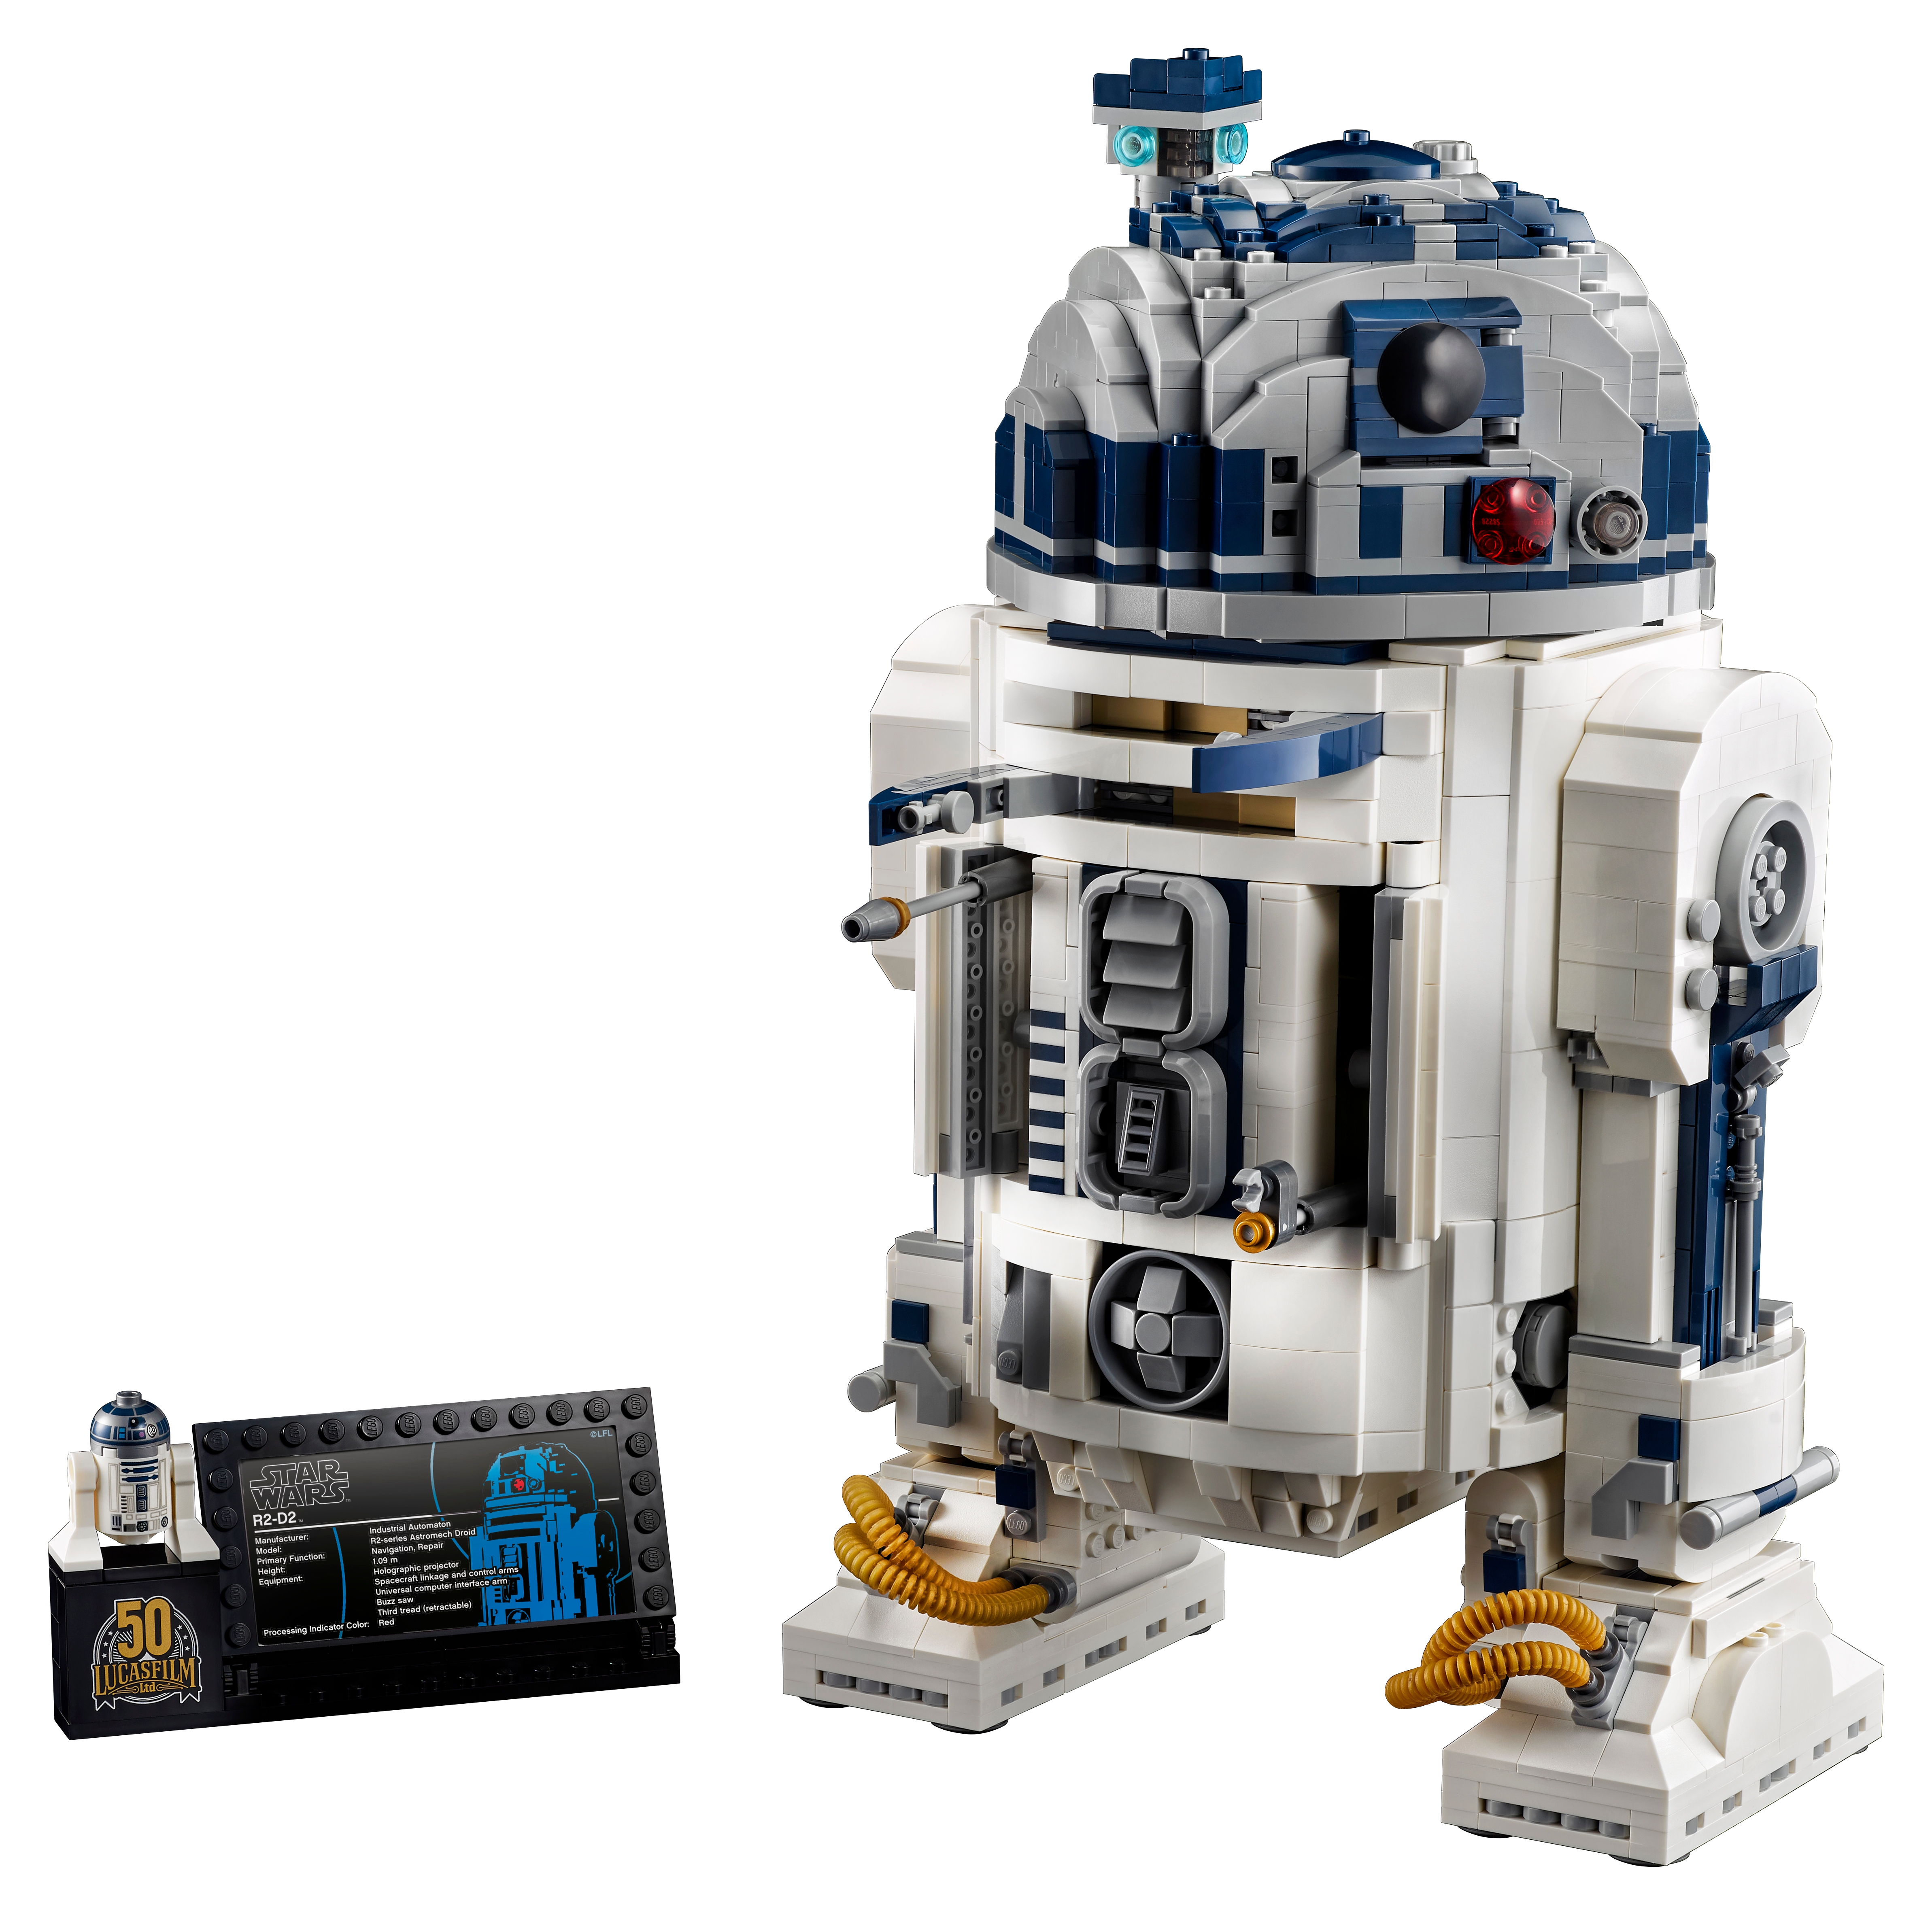 Led-beleuchtung kit für 75308 kompatibel mit roboter R2-D2 baustein ziegel  (nur licht kein modell)